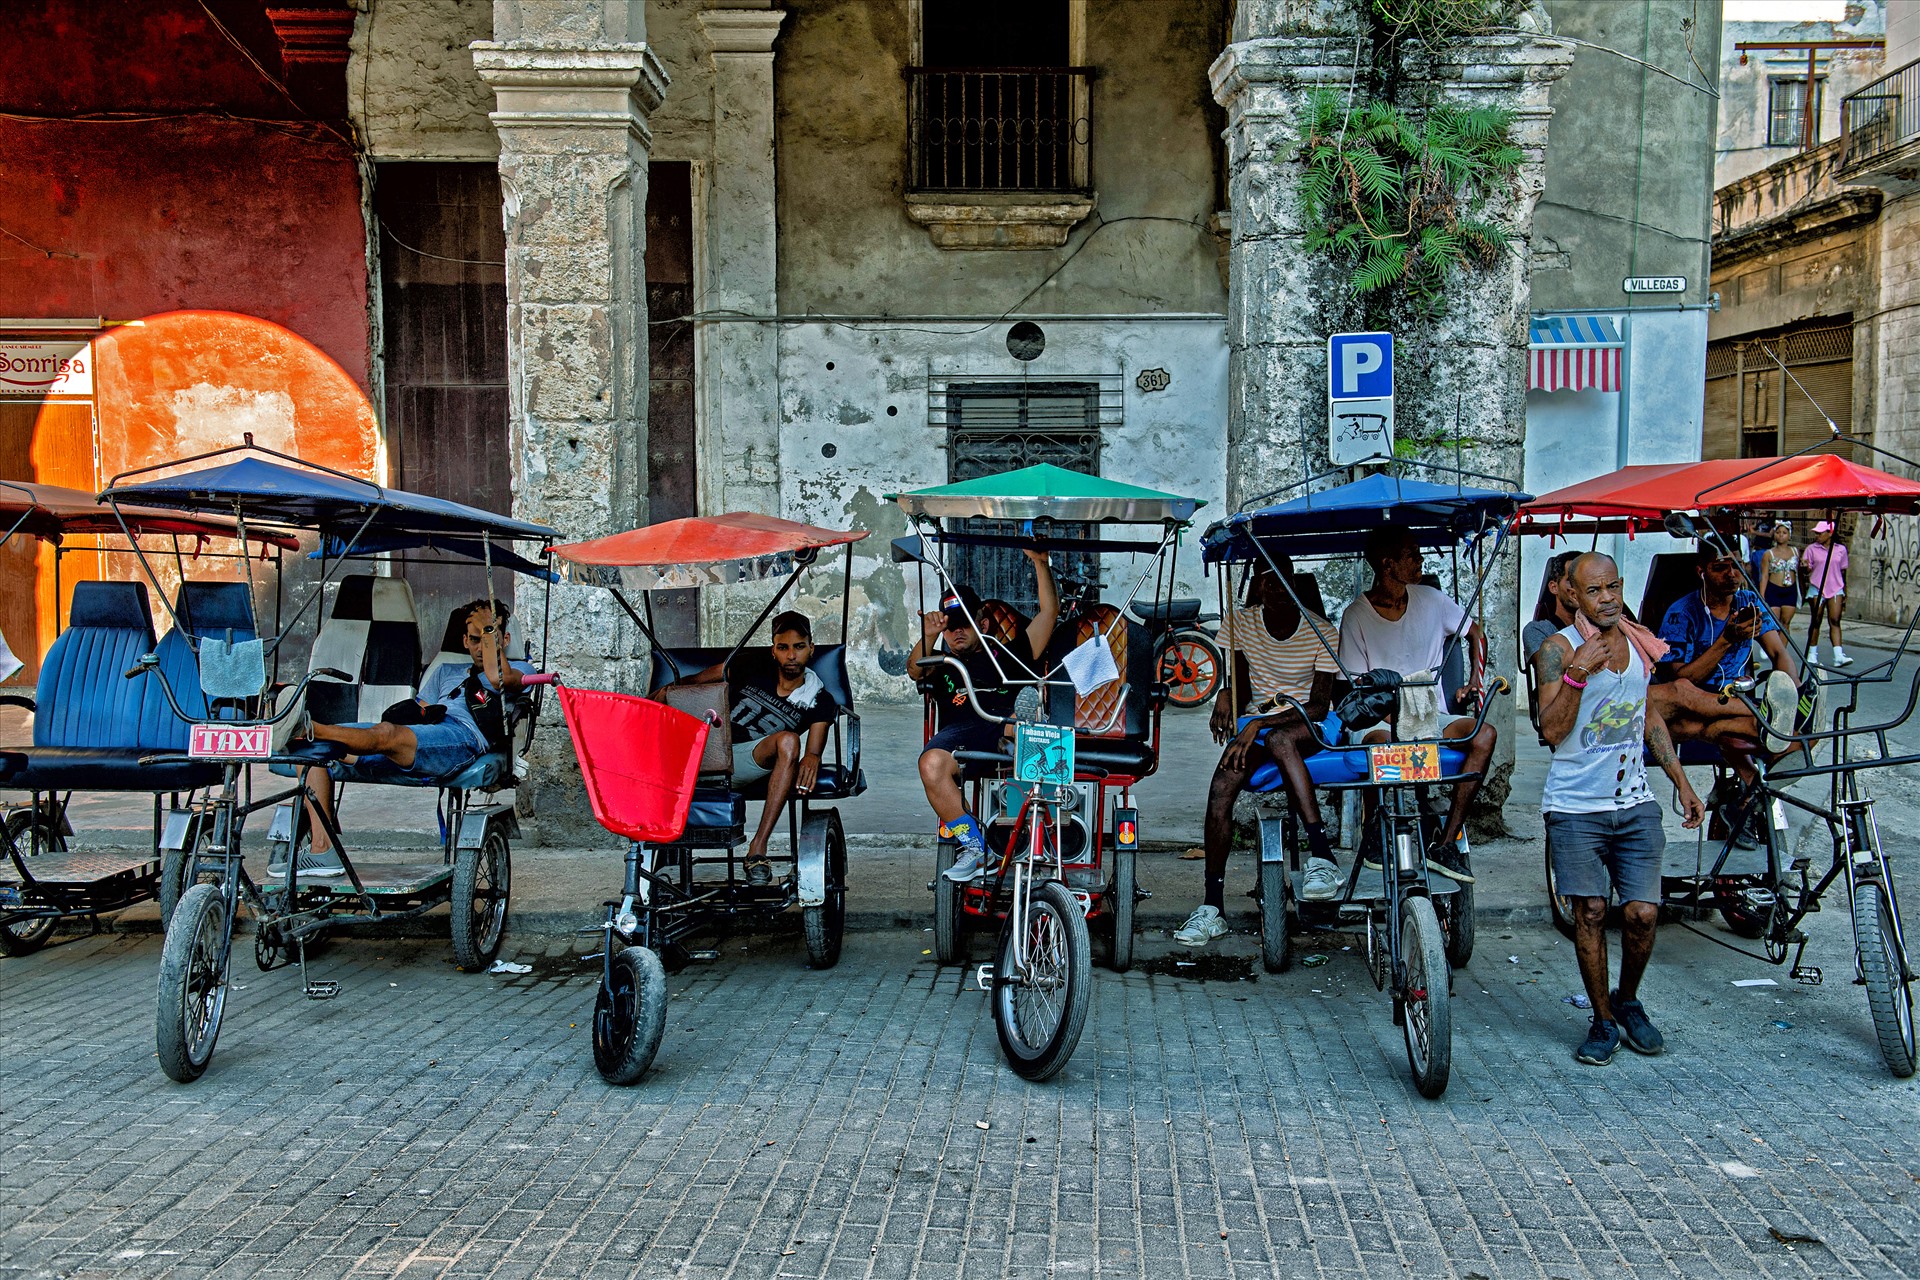 Những người lái xe tuk tuk đang chờ khách ở một con phố cổ ở La Habana, thủ đô Cuba. 